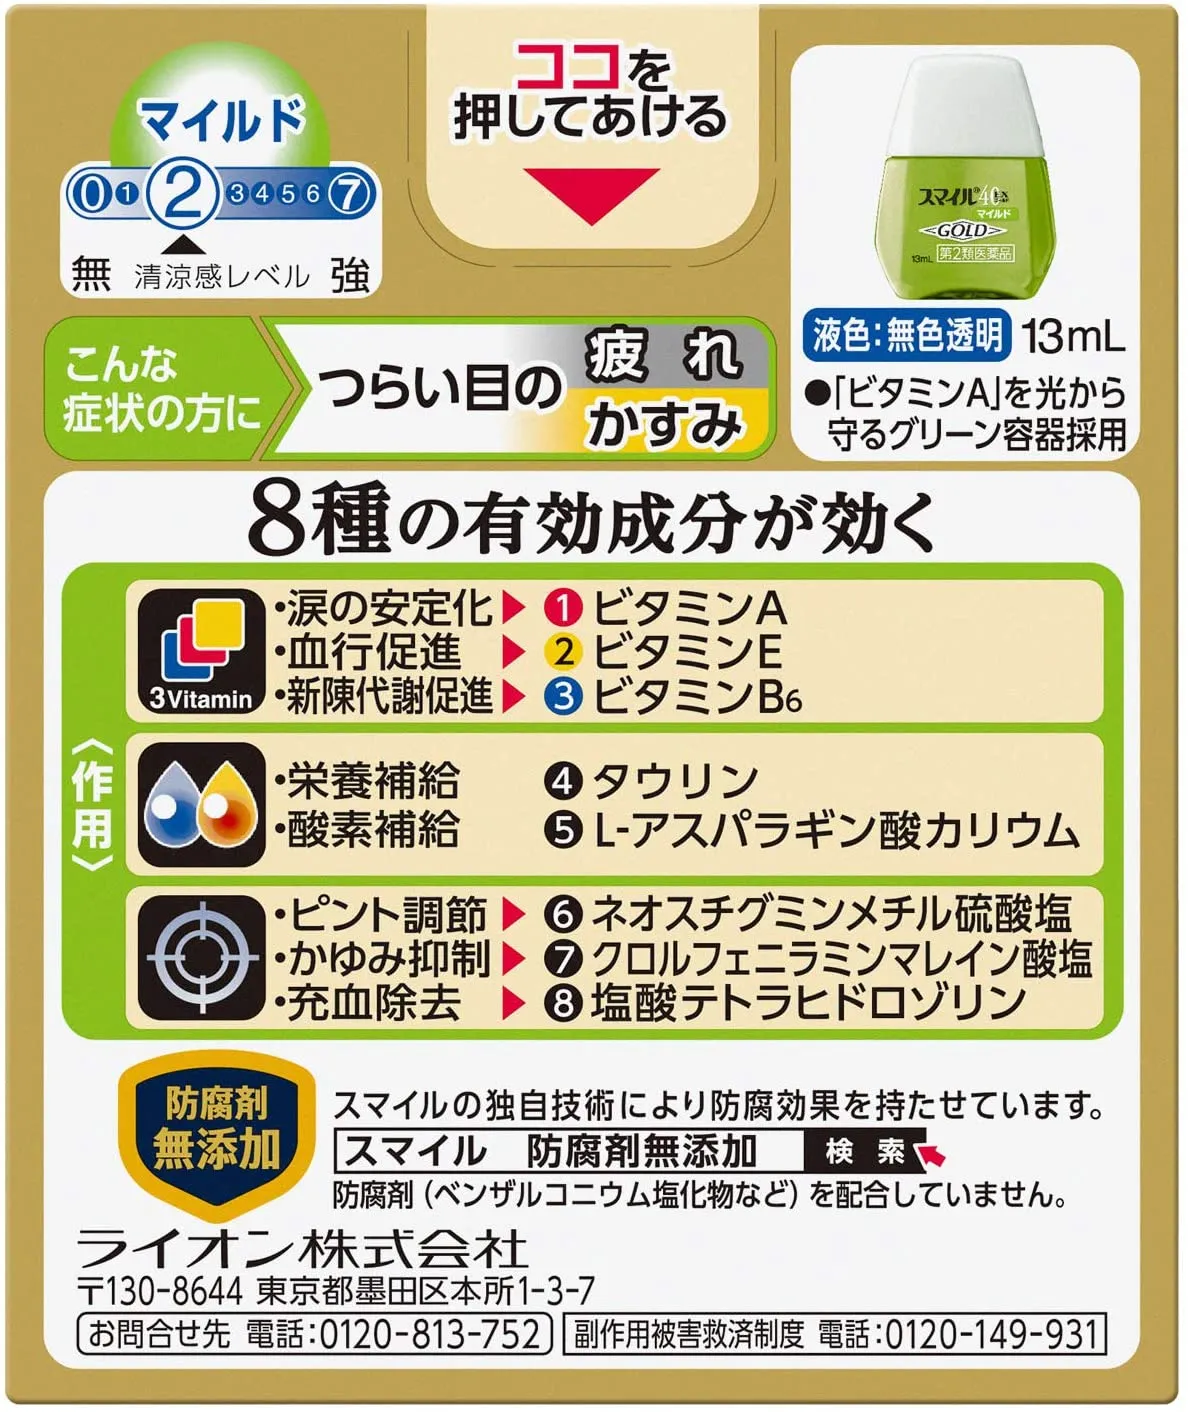 Освежающие японские витаминизированные капли для глаз LION Smile 40EX Gold Mild